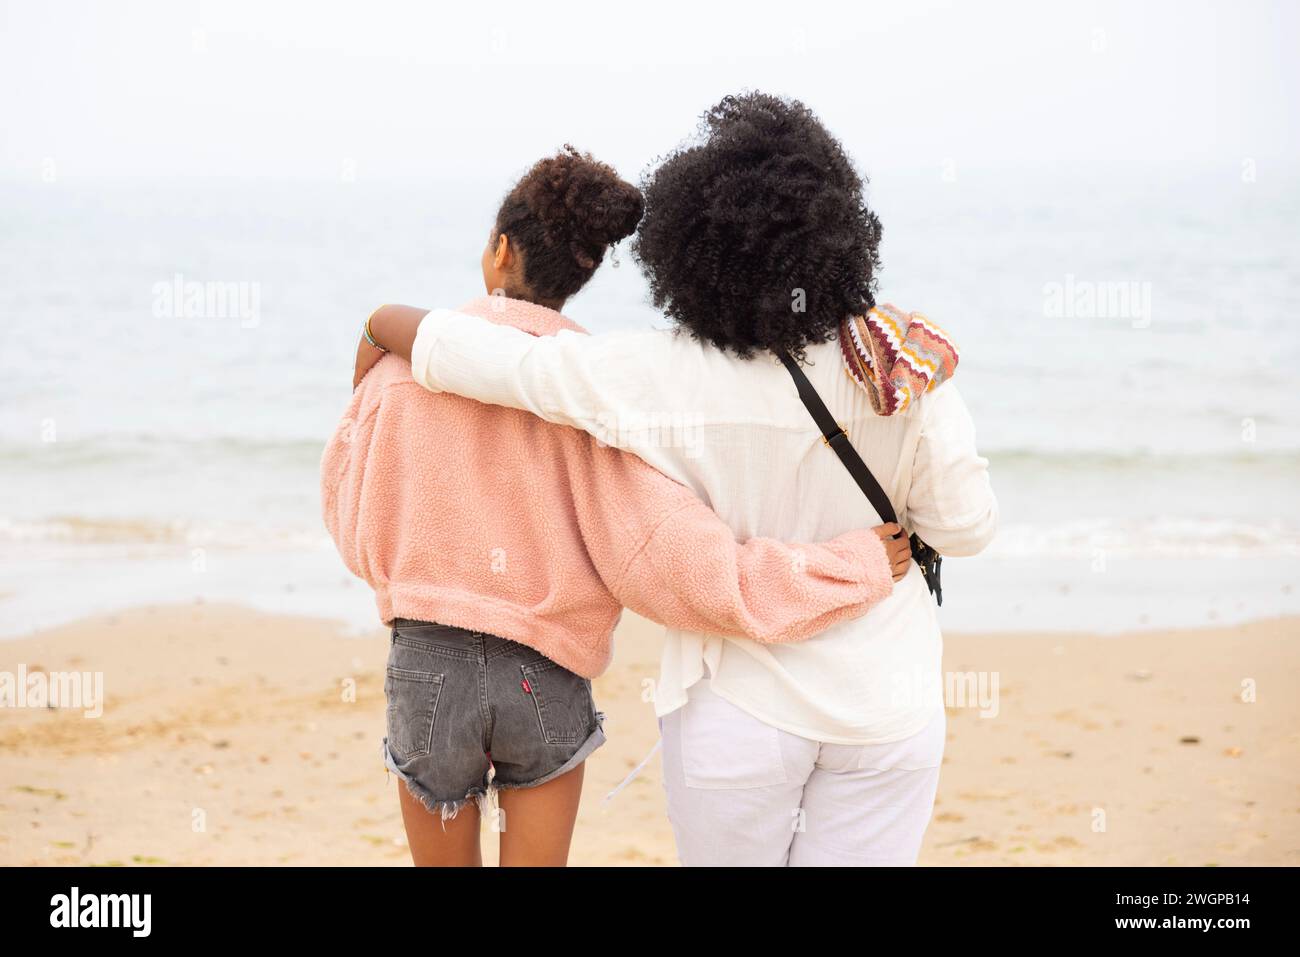 Deux sœurs de race mixte sur la plage s'embrassent et regardent vers la mer. Banque D'Images